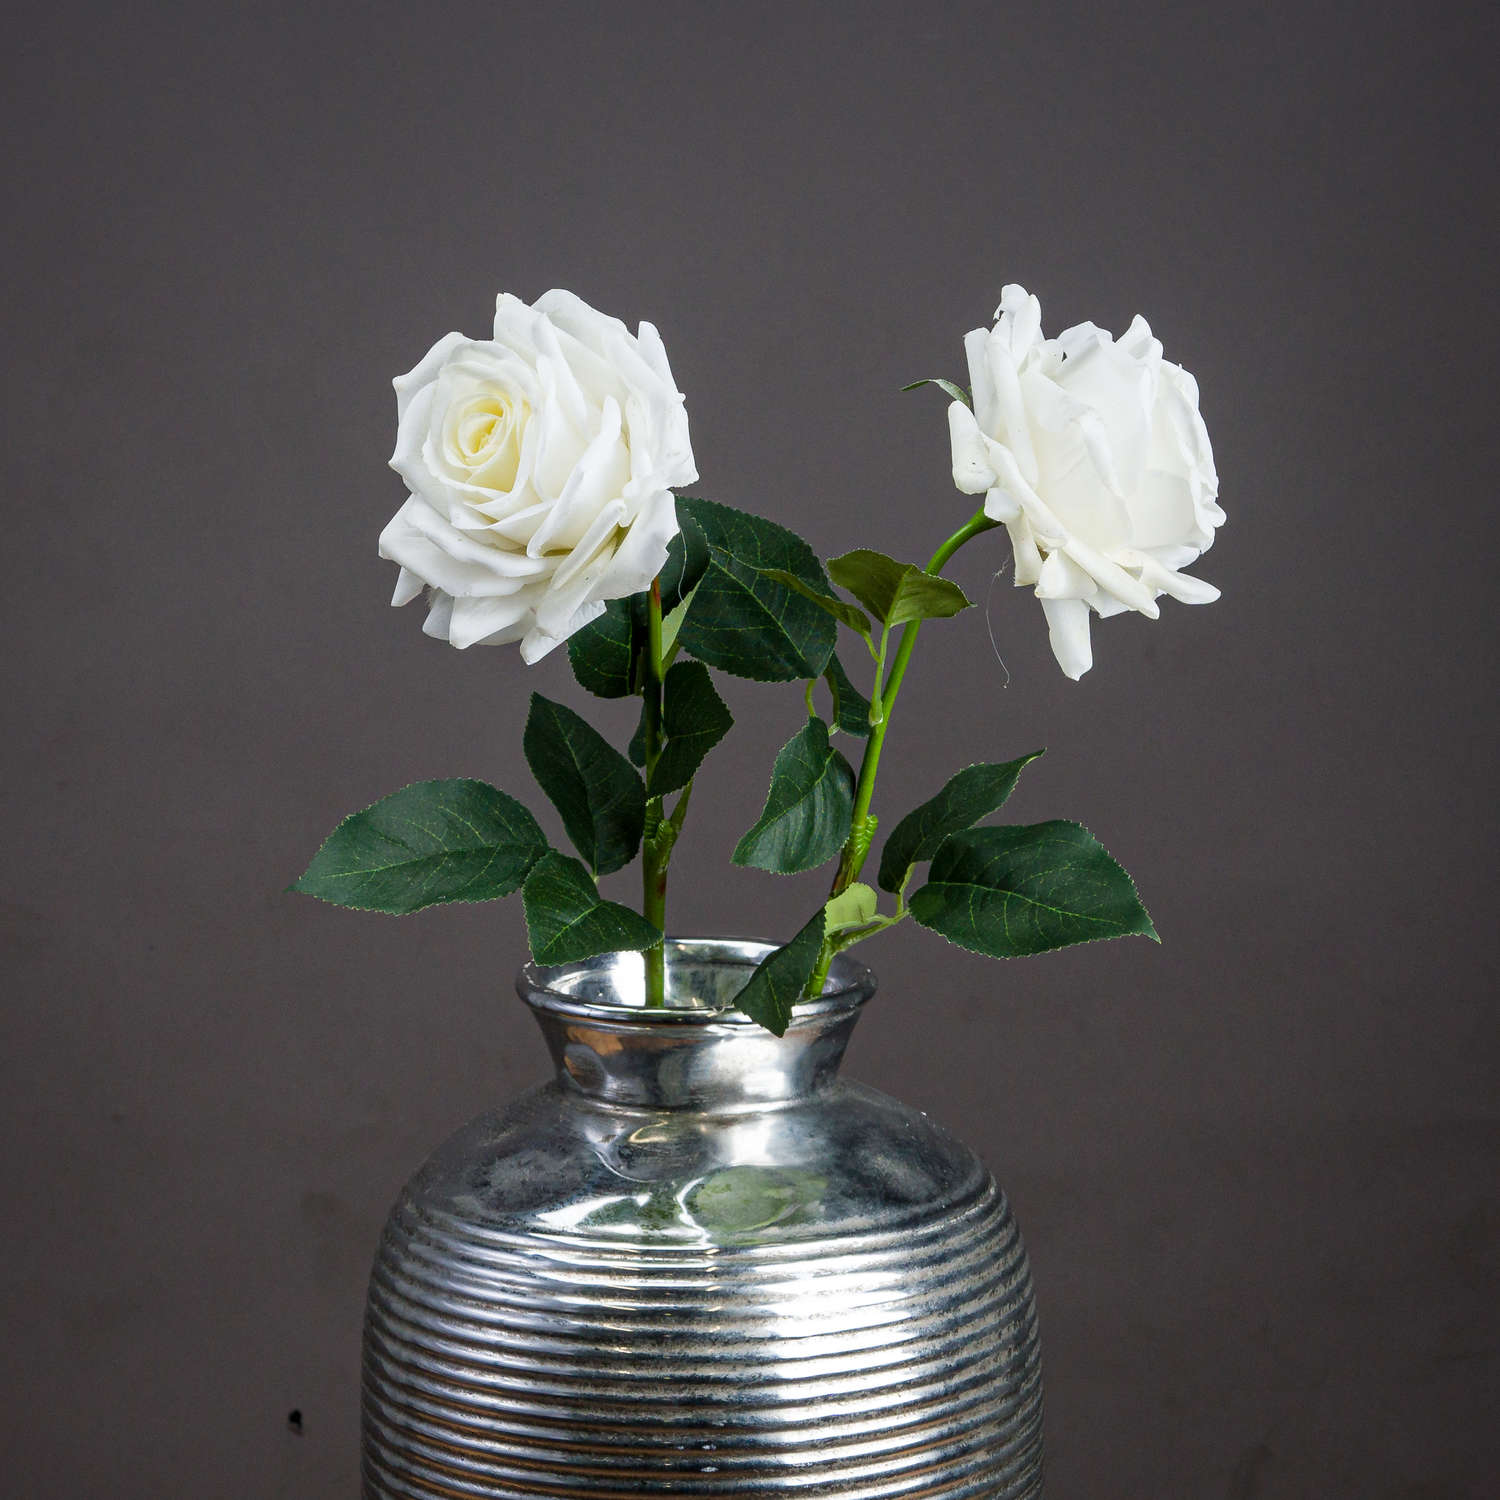 Large White Garden Rose - Image 1